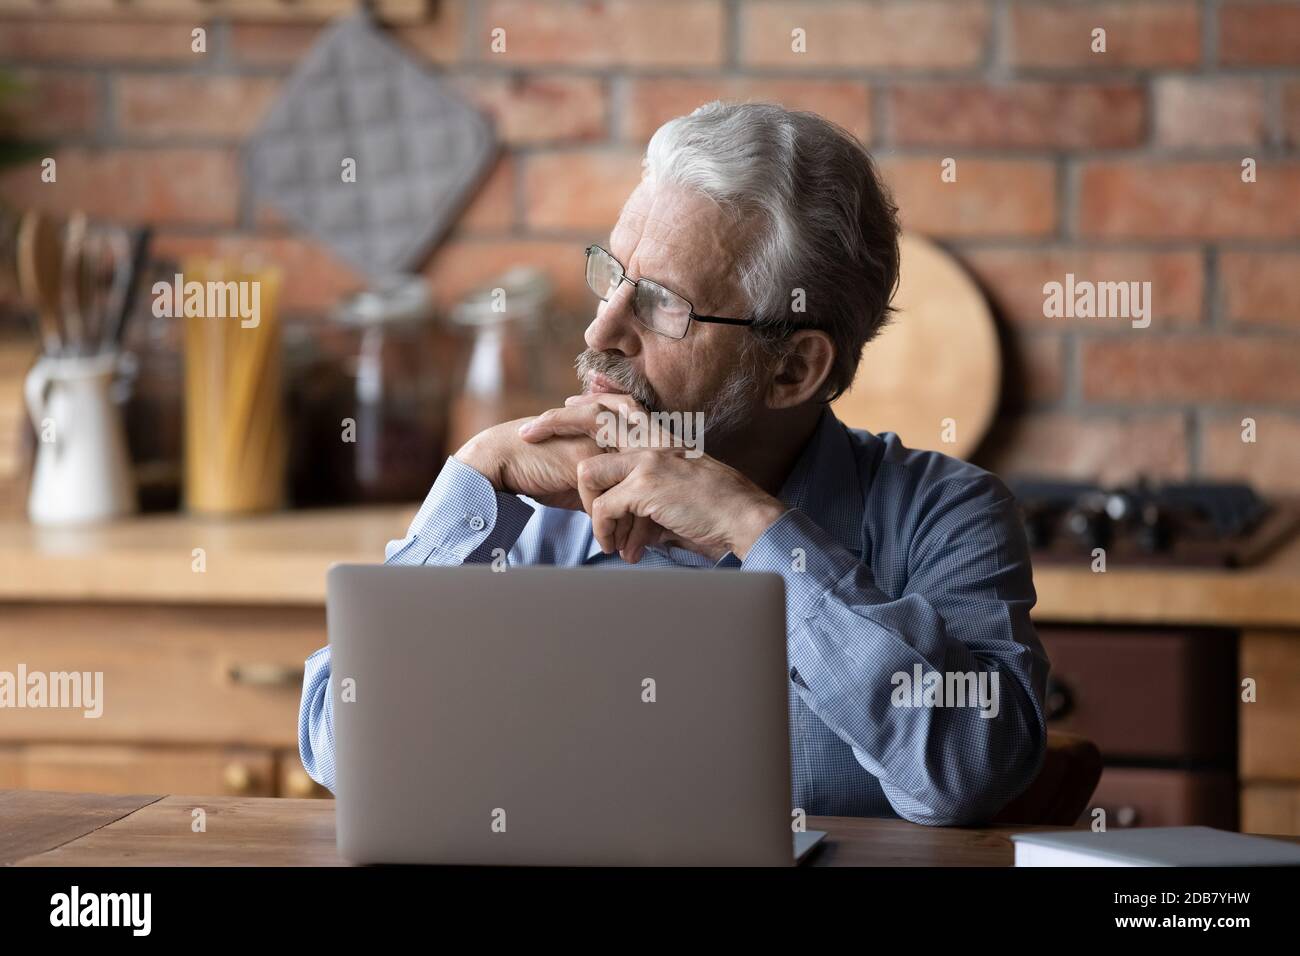 Homme mûr et réfléchi portant des lunettes sur un ordinateur portable, regardant de côté Banque D'Images